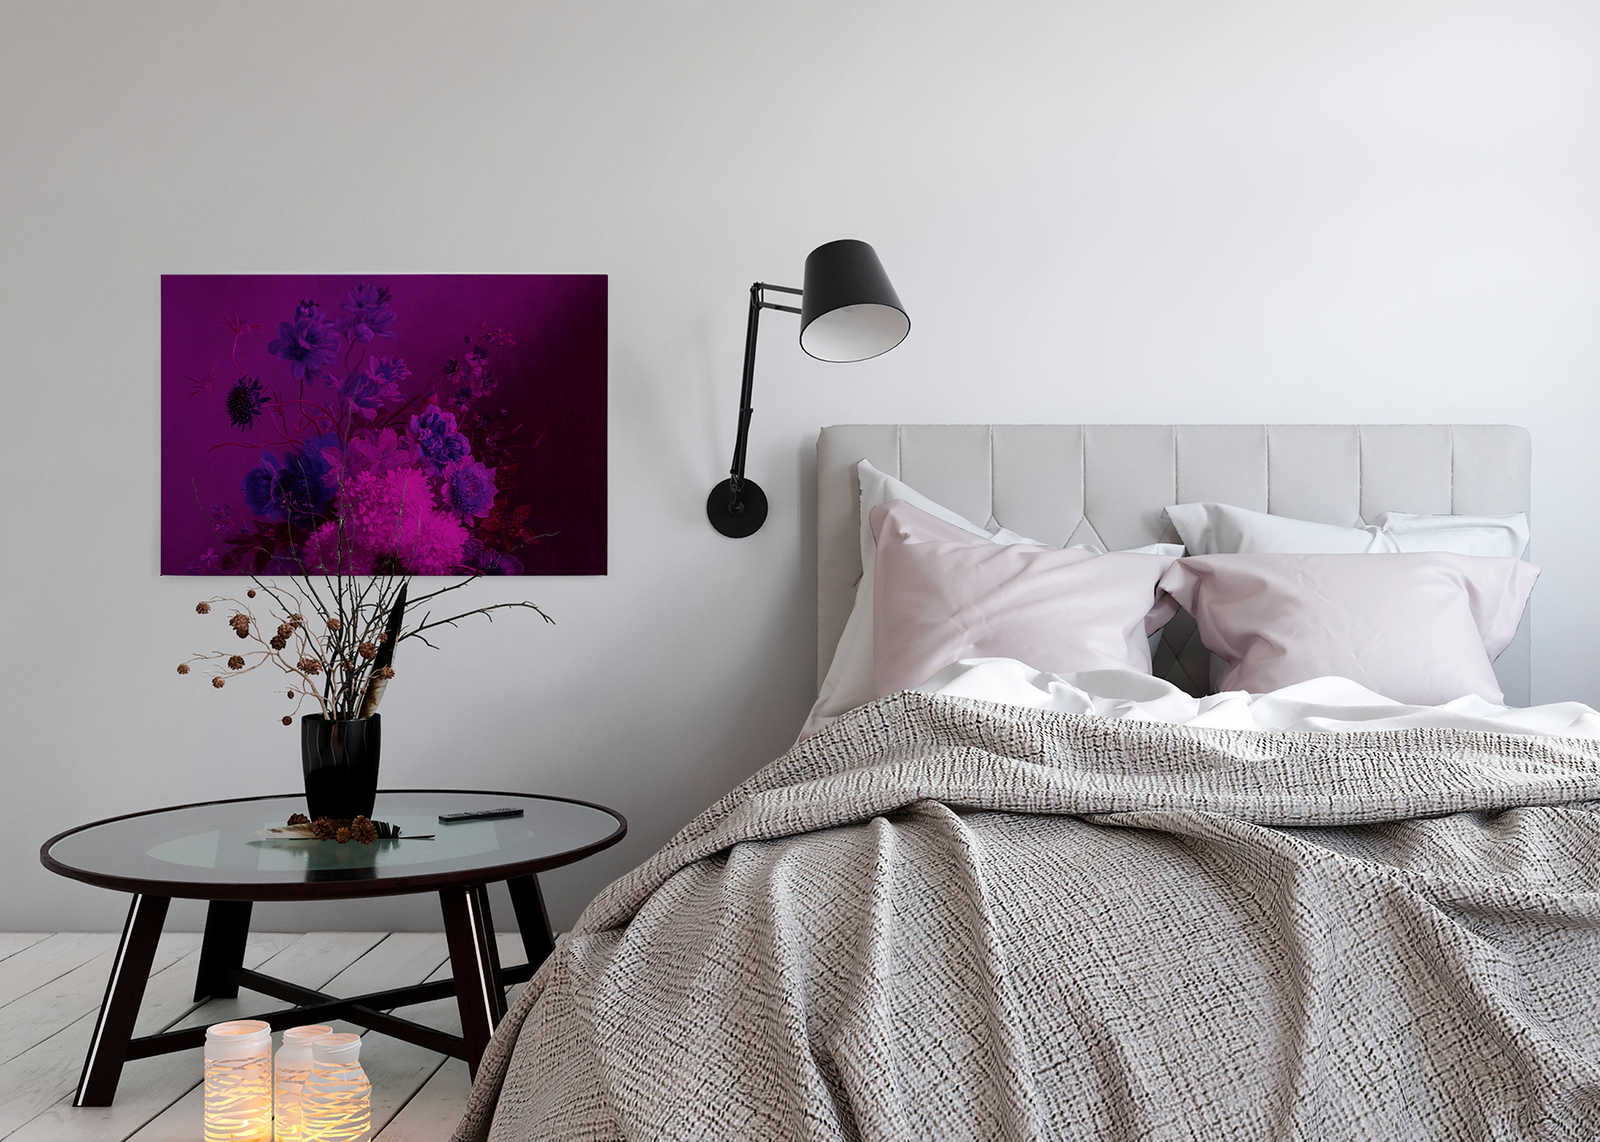             Neon Leinwandbild mit Blumen Stillleben | Bouquet Vibran 3 – 0,90 m x 0,60 m
        